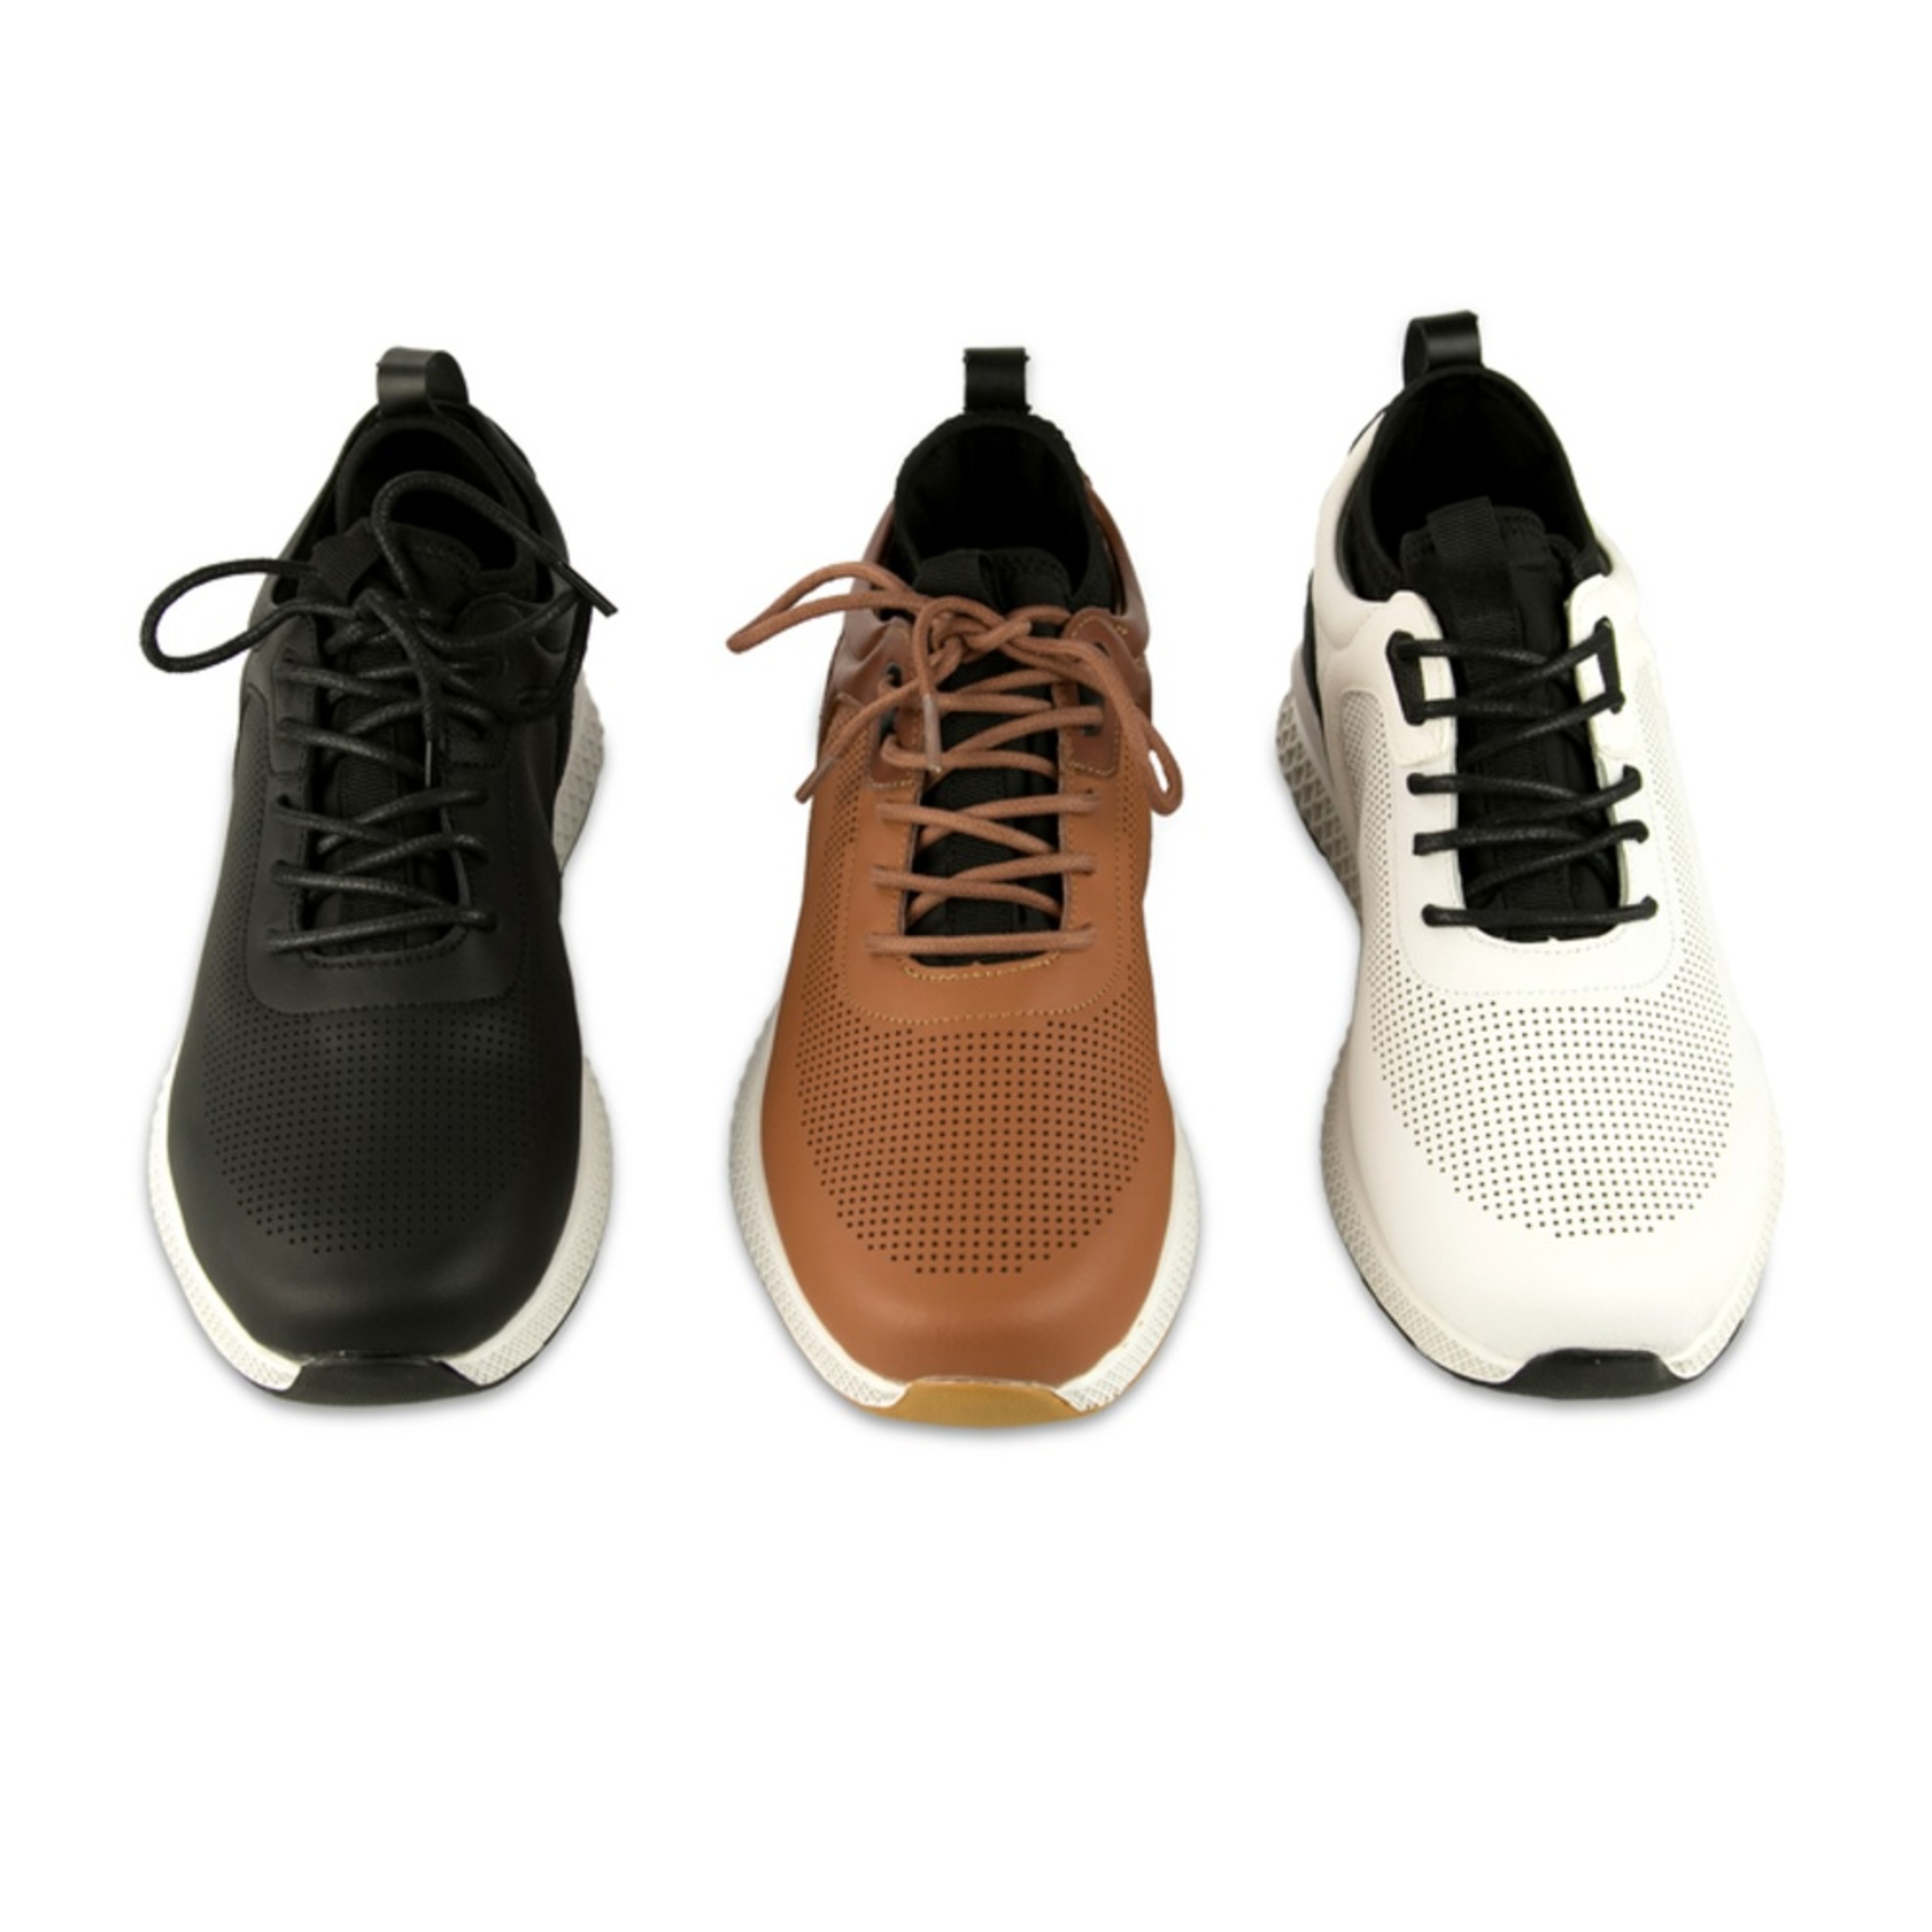 Zapatos De Golf Zerimar Con Troquelados - Negro/Blanco - Zapatos Golf Hombre Zapatillas Piel  MKP